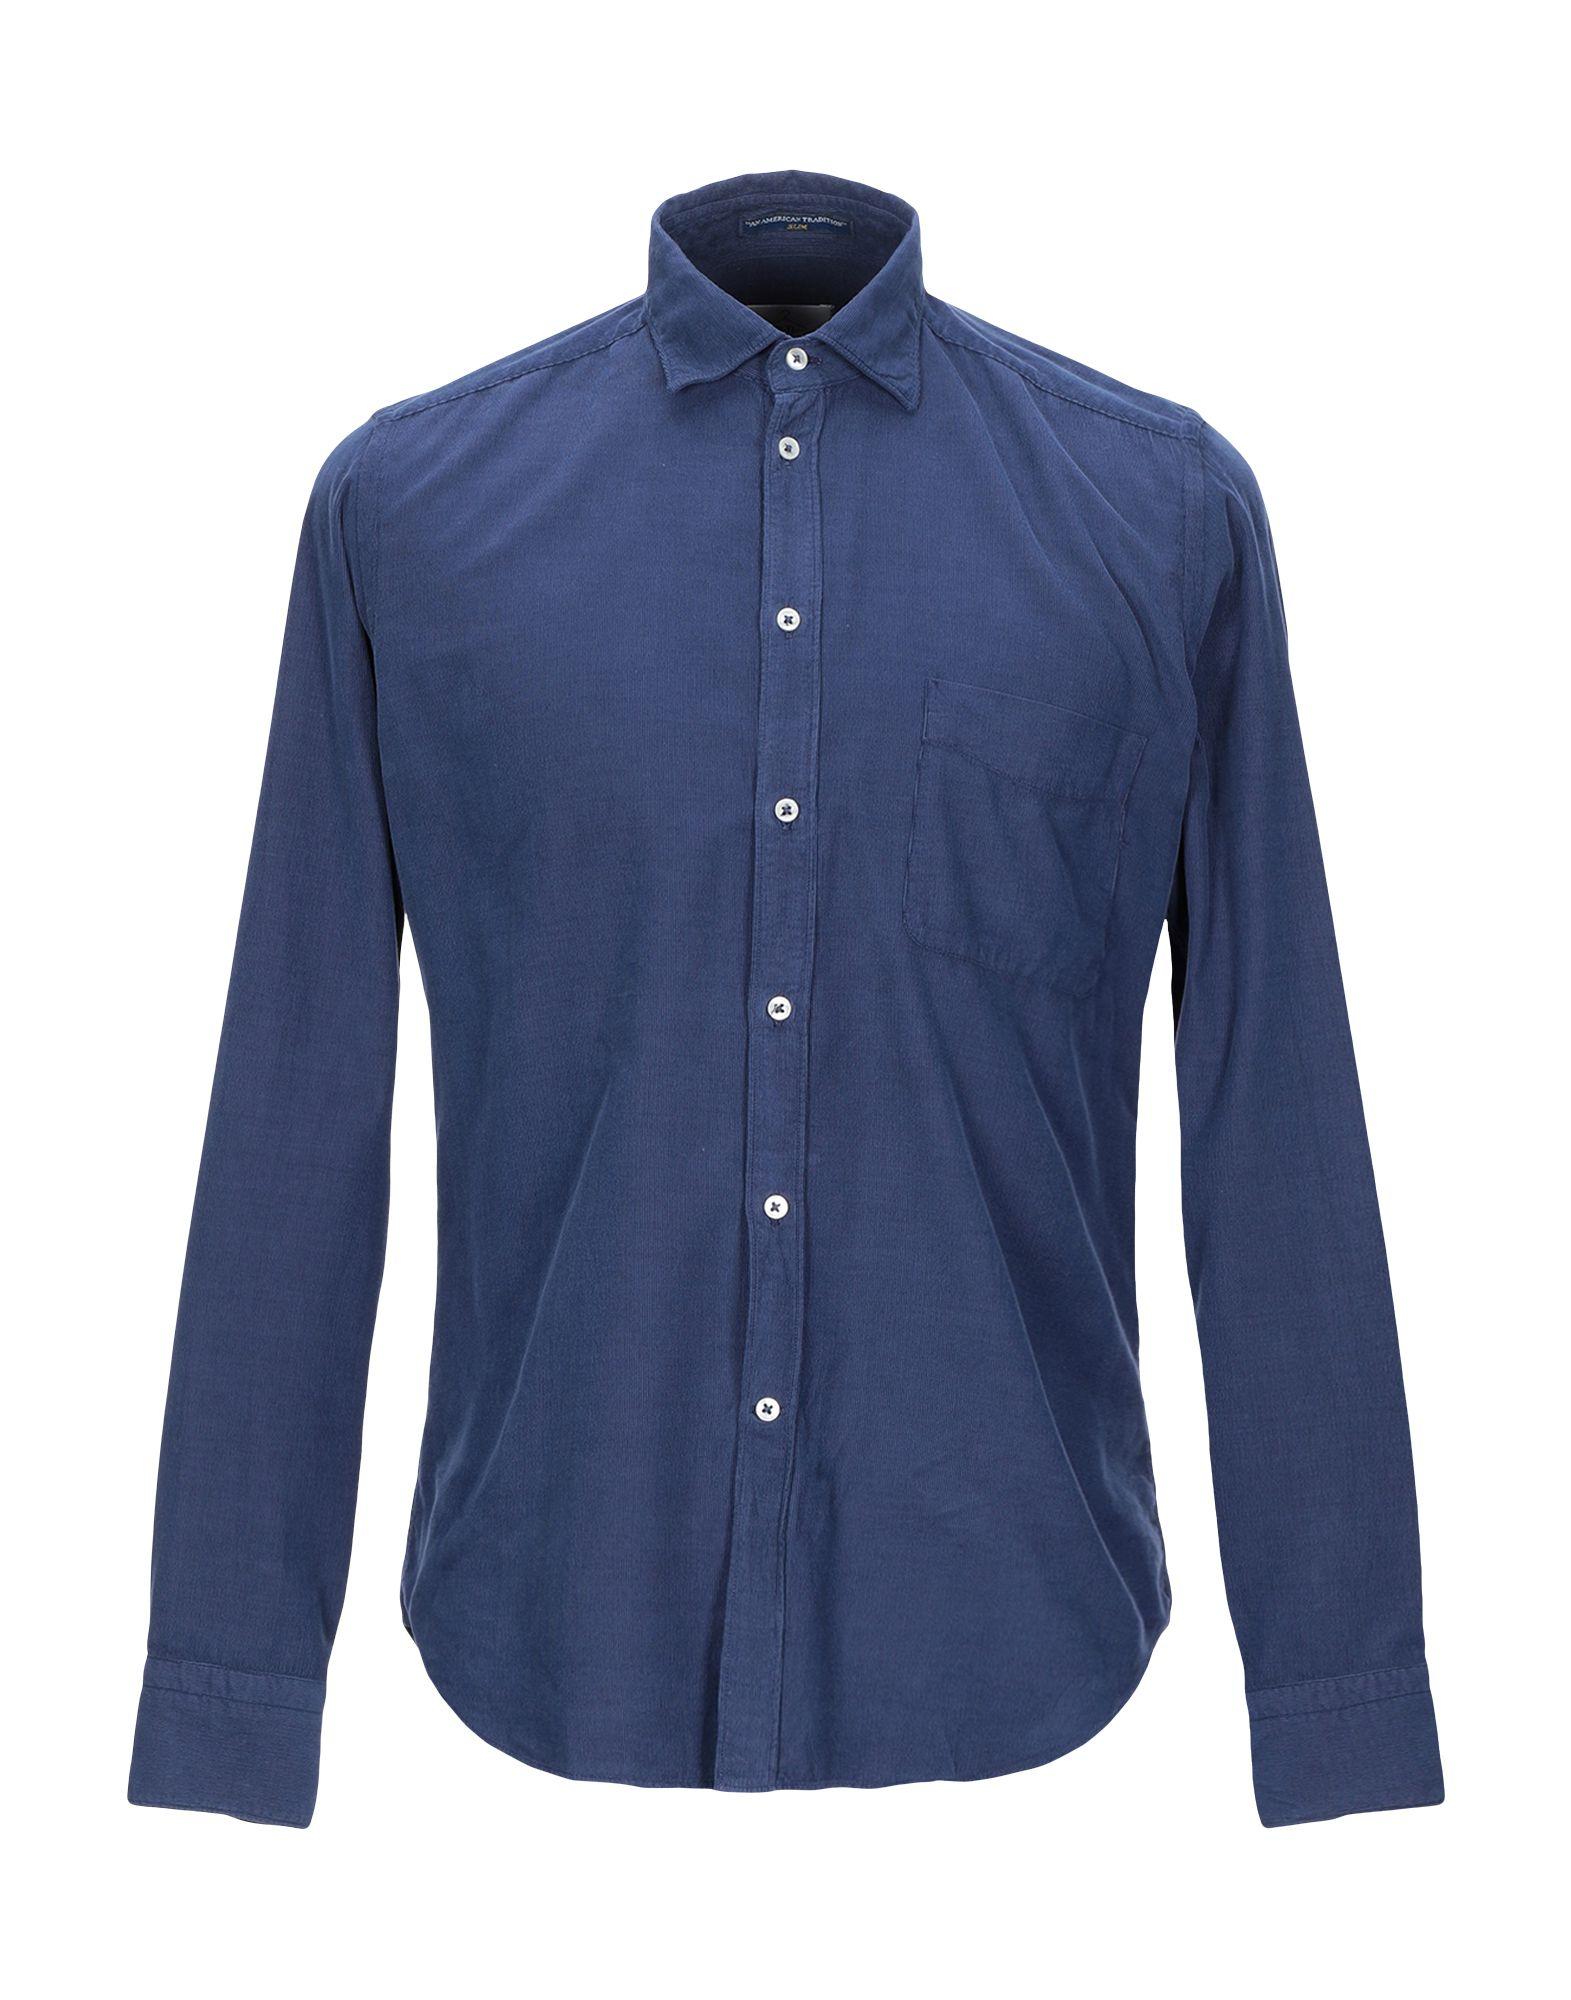 B.D. Baggies Velvet Shirt in Blue for Men - Lyst